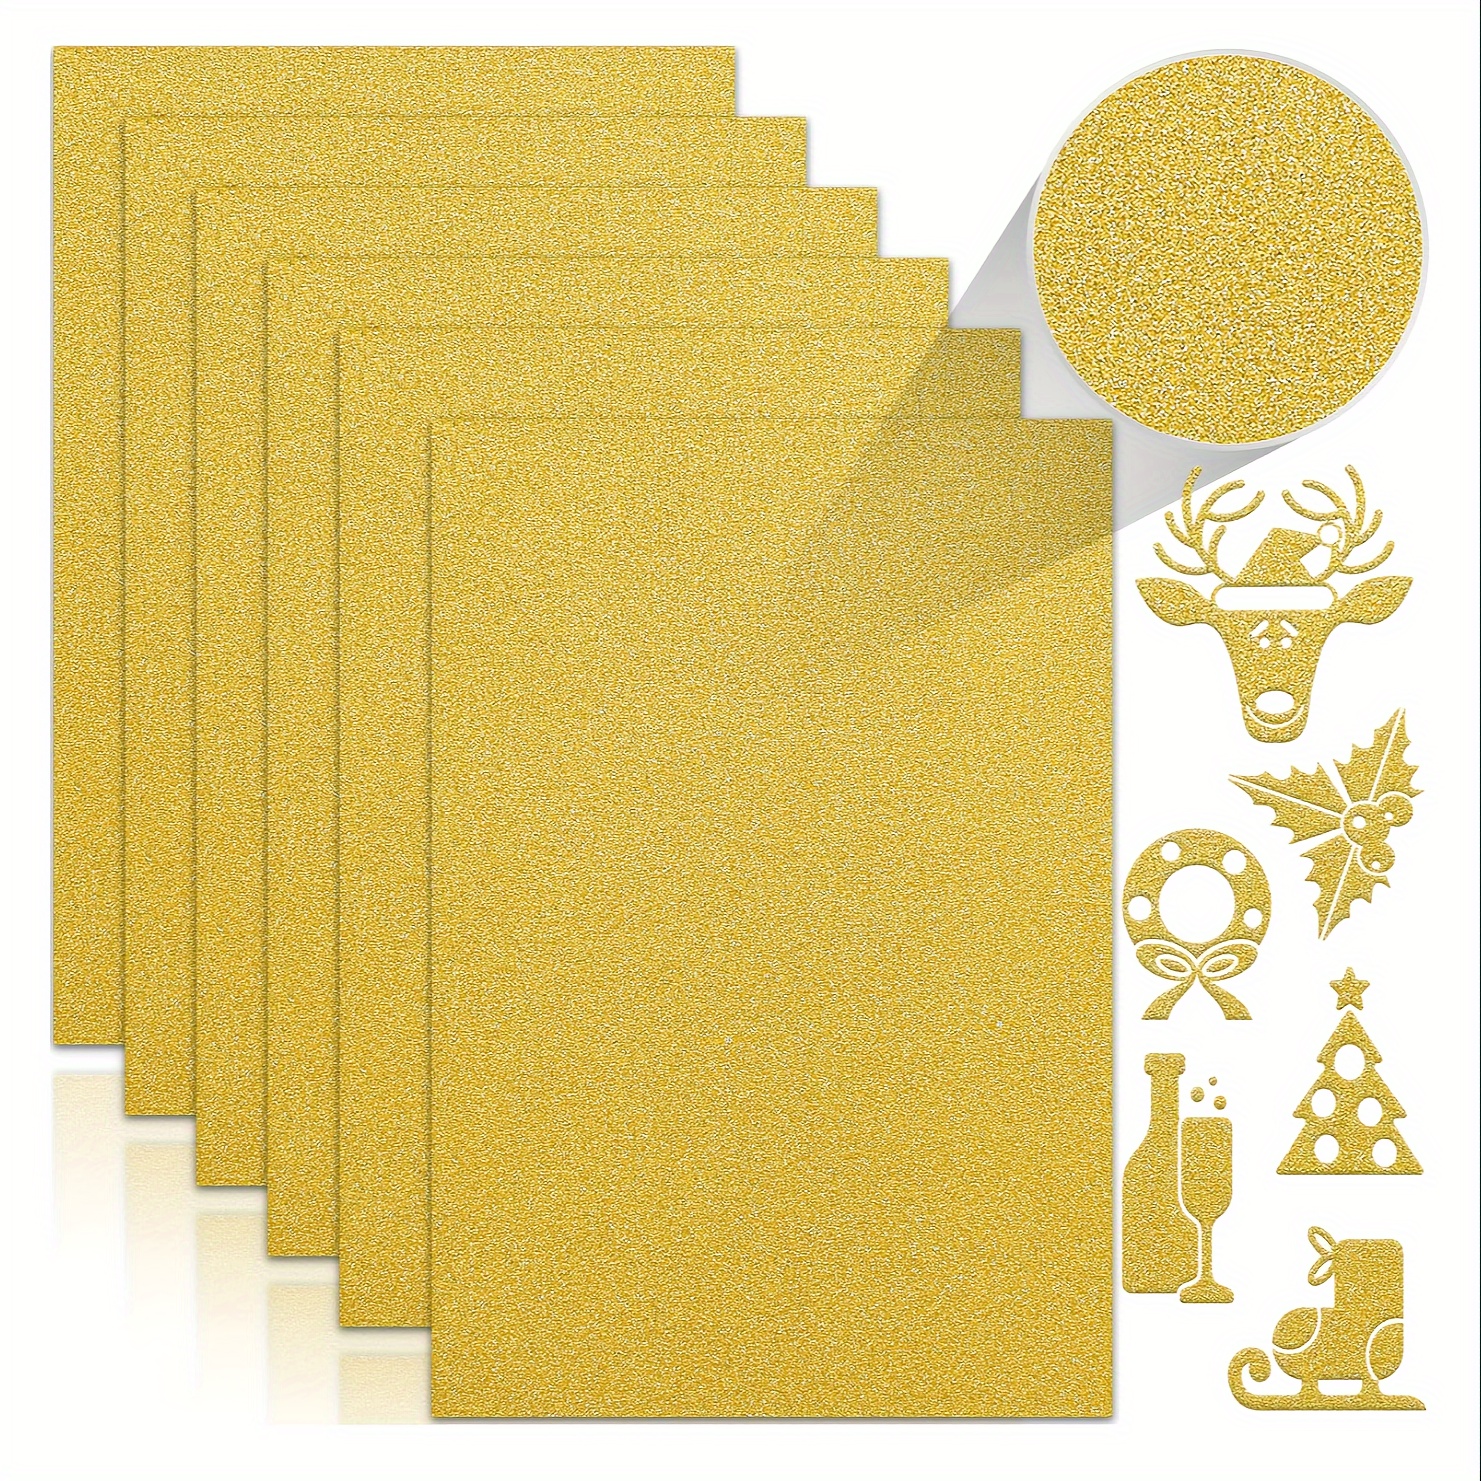 Gold Glitter Cardstock | Non-Shedding Glitter Cardstock